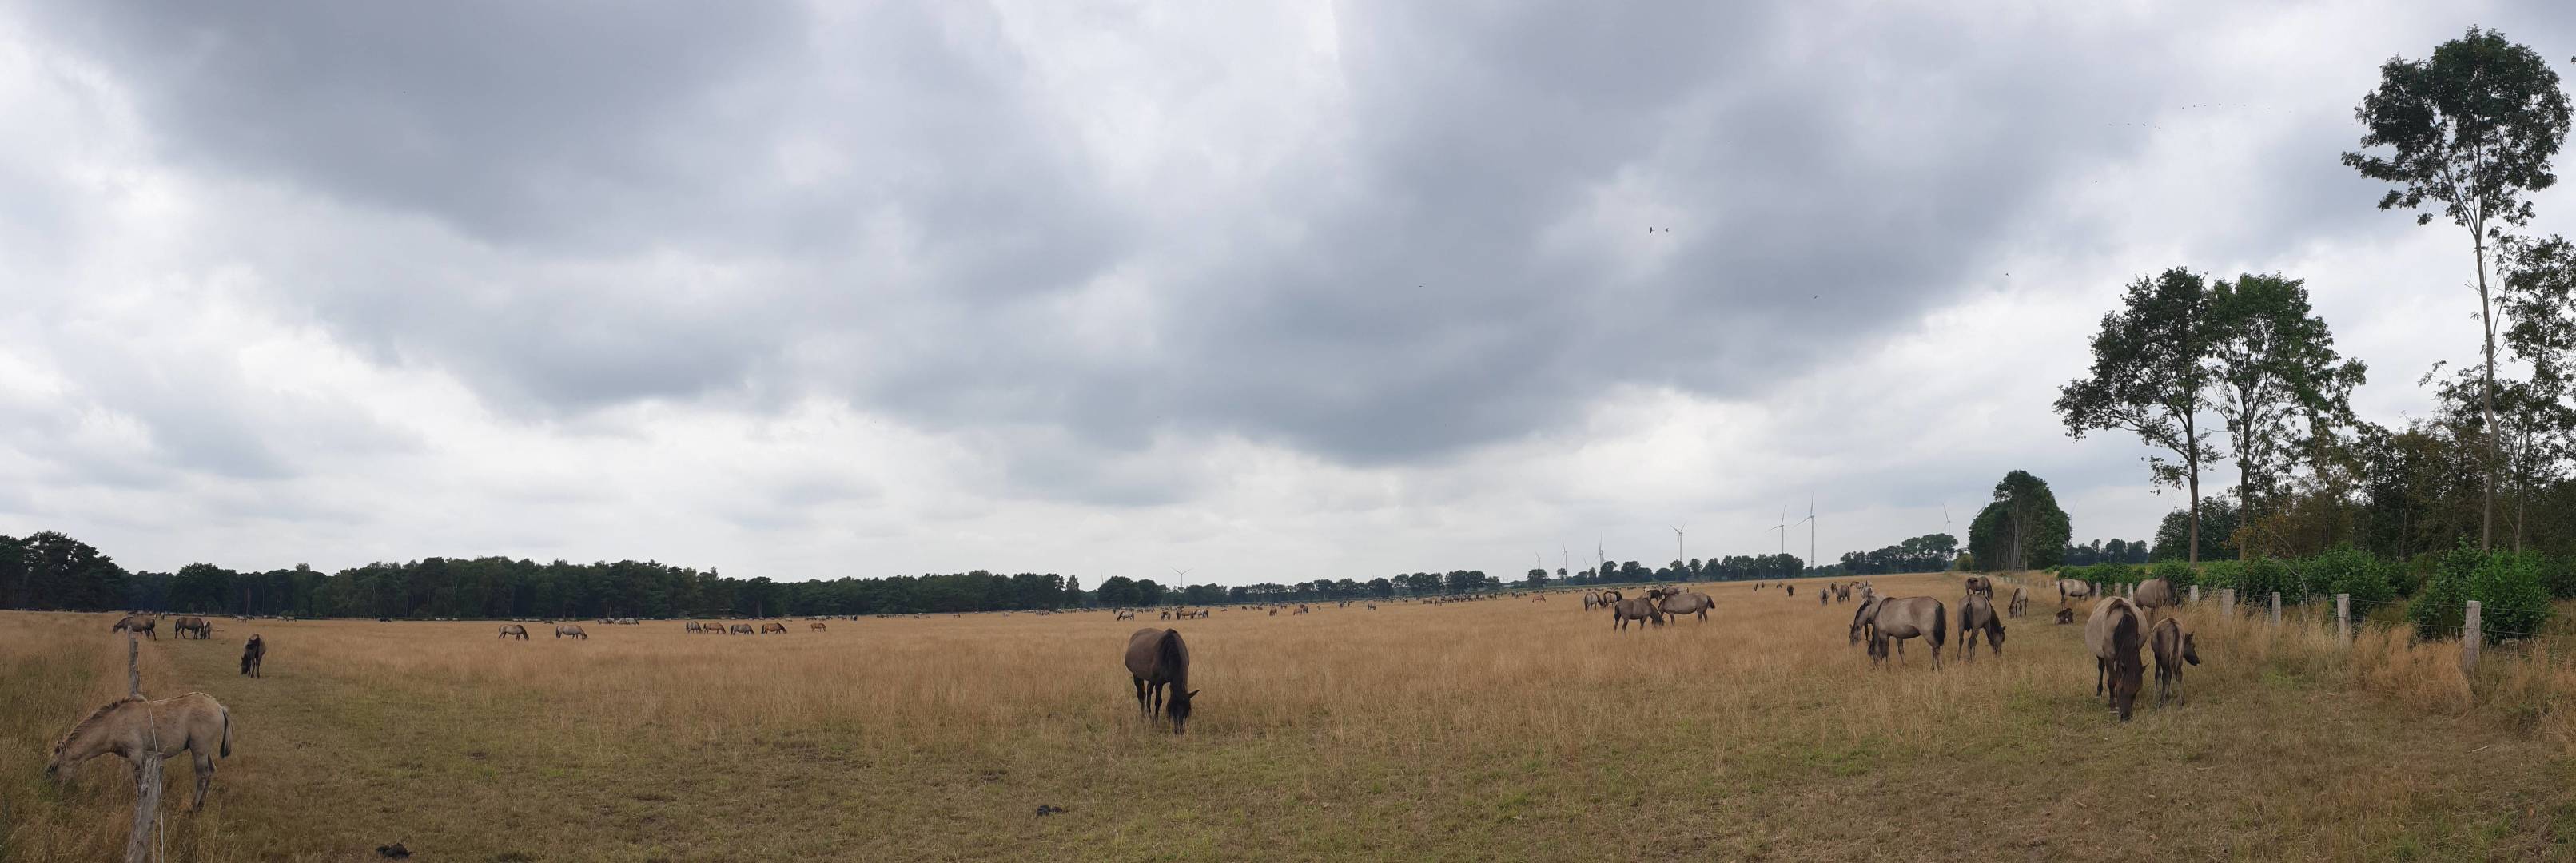 31/36 Wildpferd-Panorama